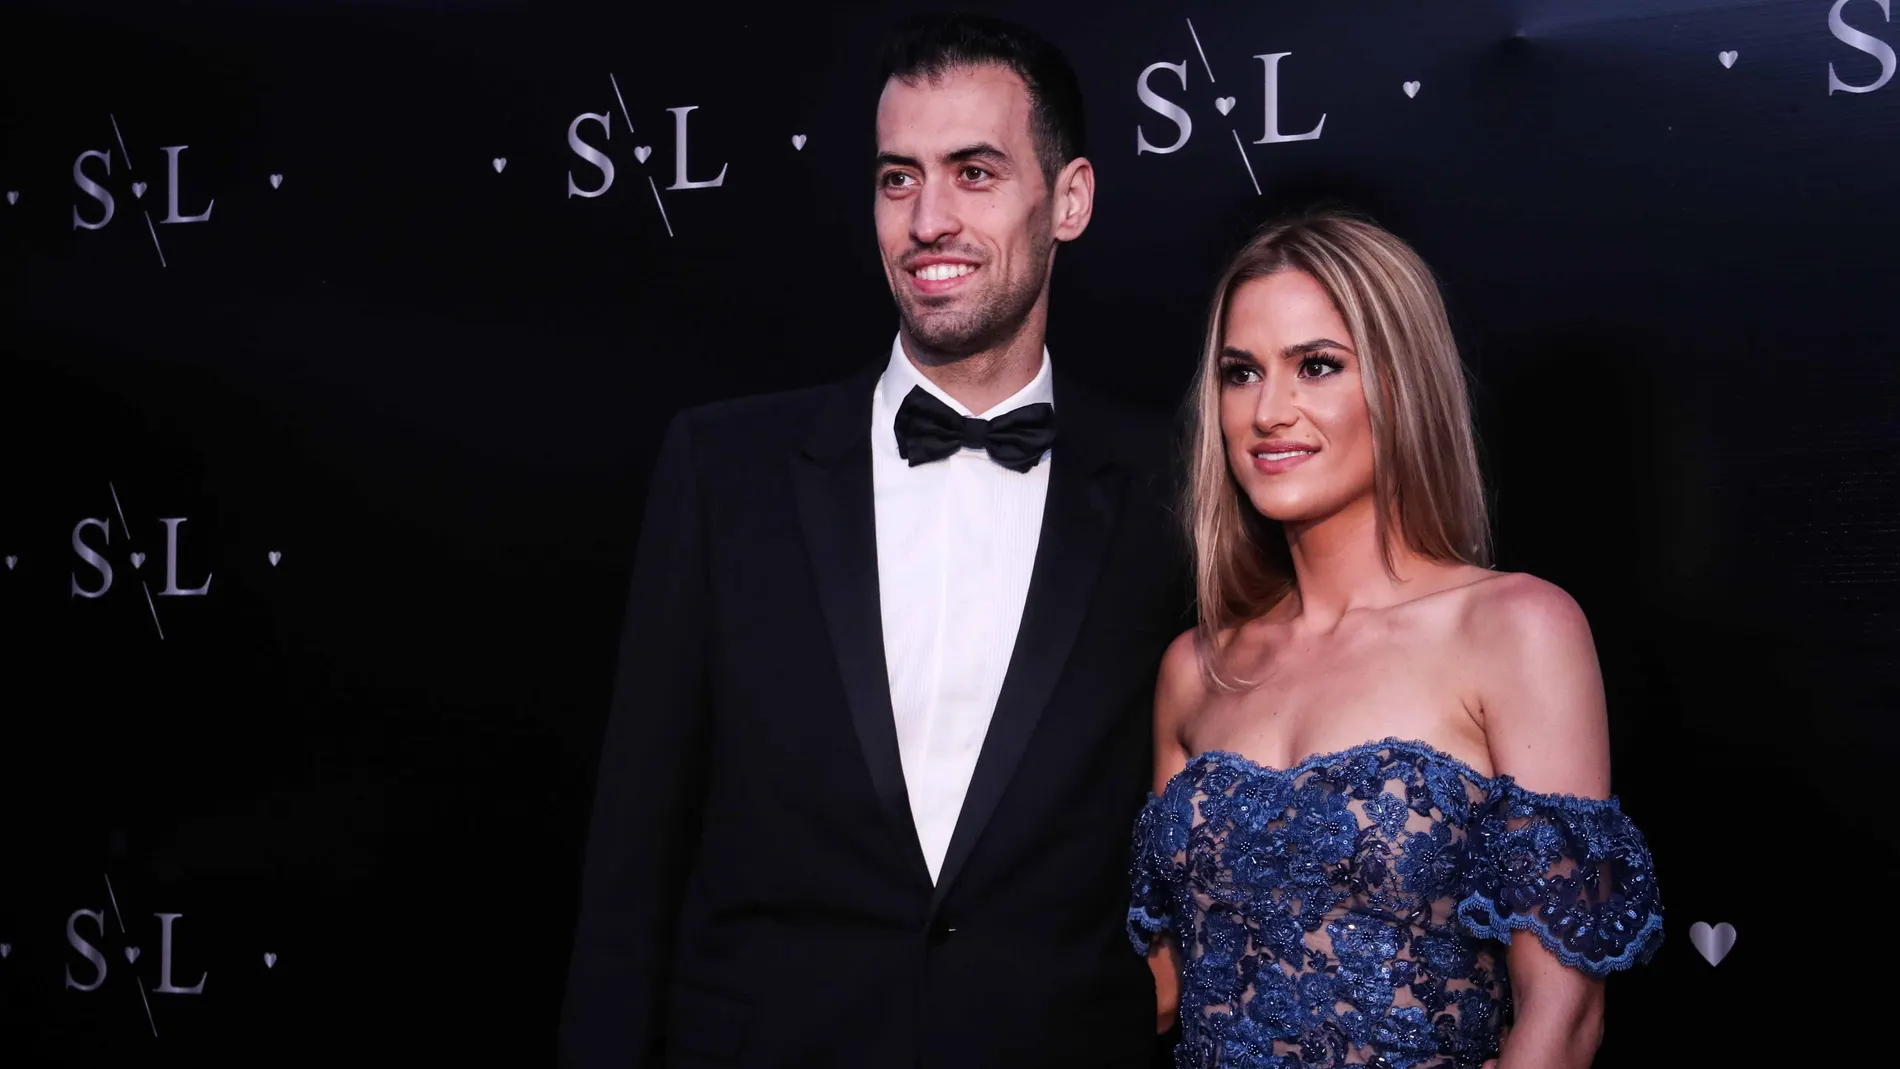 El futbolista Luis Suárez renovó votos con su esposa Romarey Ventura